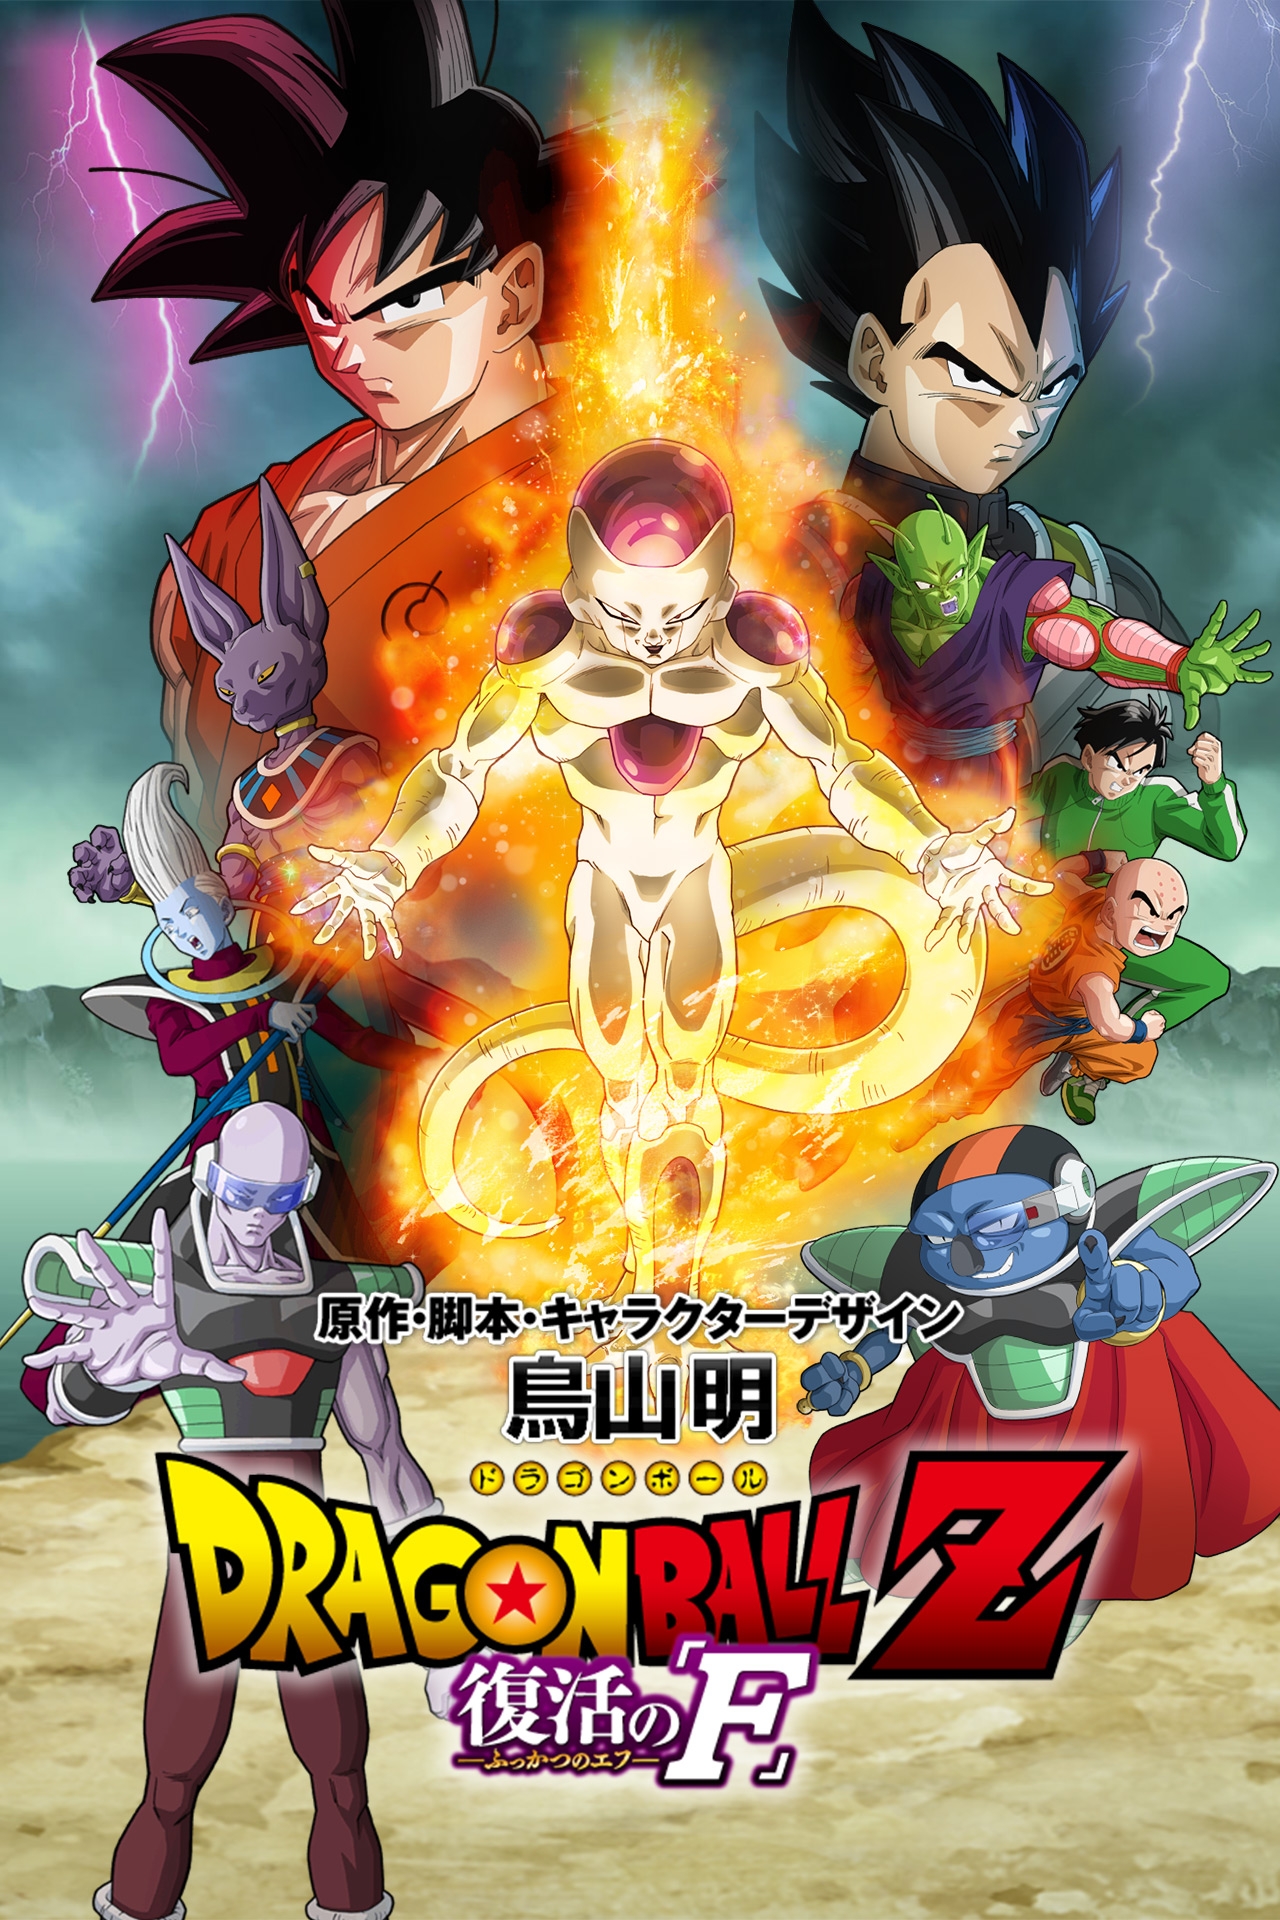 Dragon Ball Z: Resurrection 'F' | Dragon Ball Wiki | FANDOM powered by Wikia